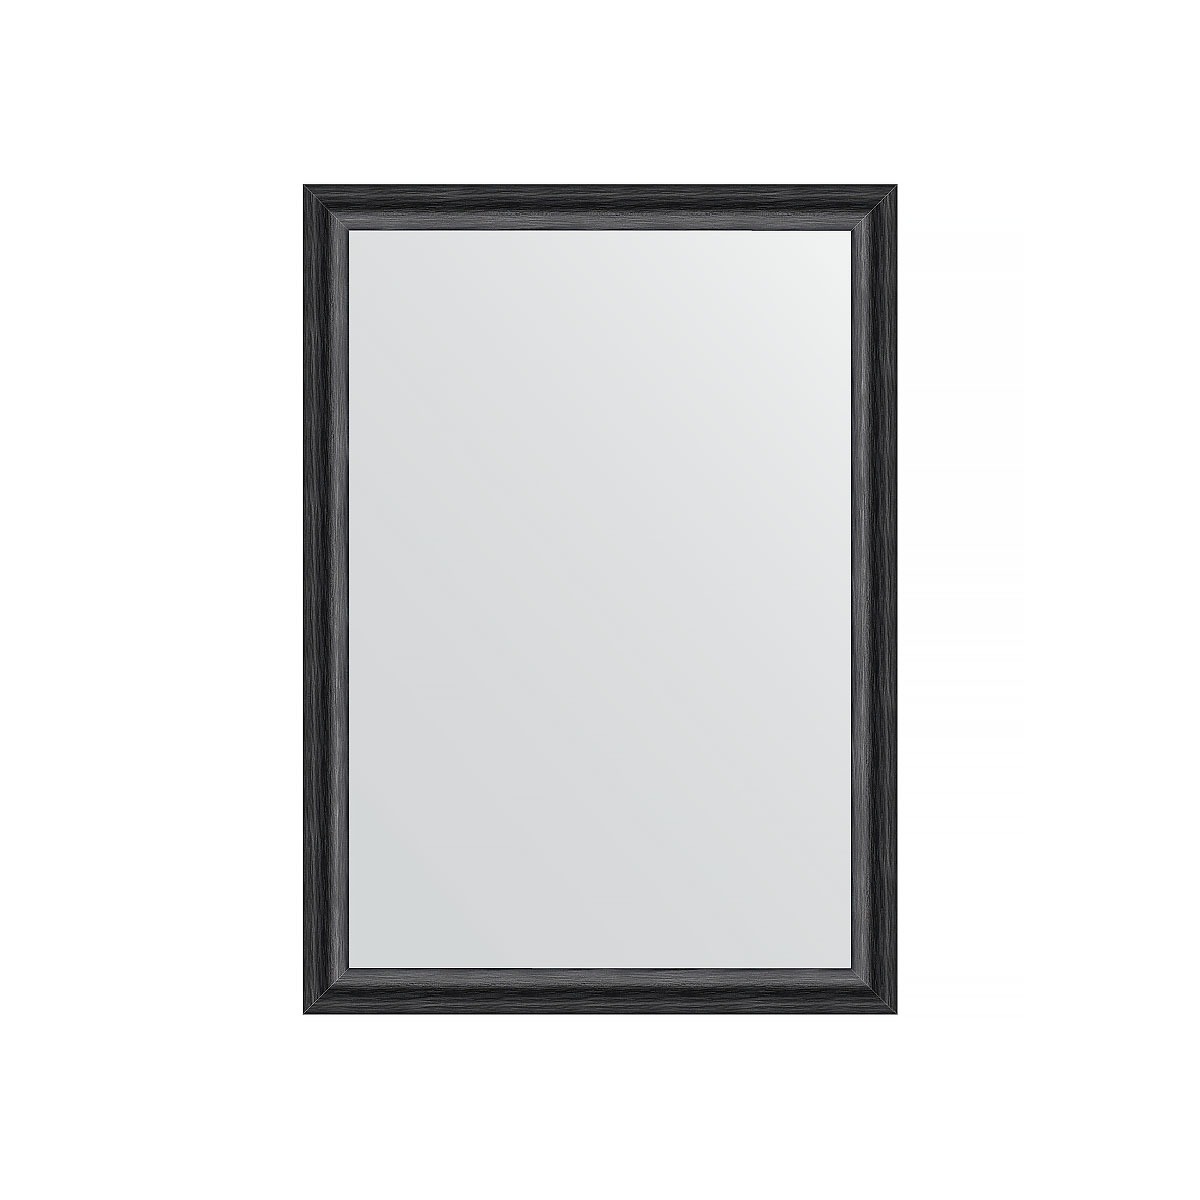 Зеркало в багетной раме Evoform черный дуб 37 мм 50х70 см зеркало в багетной раме evoform бук 37 мм 50х70 см